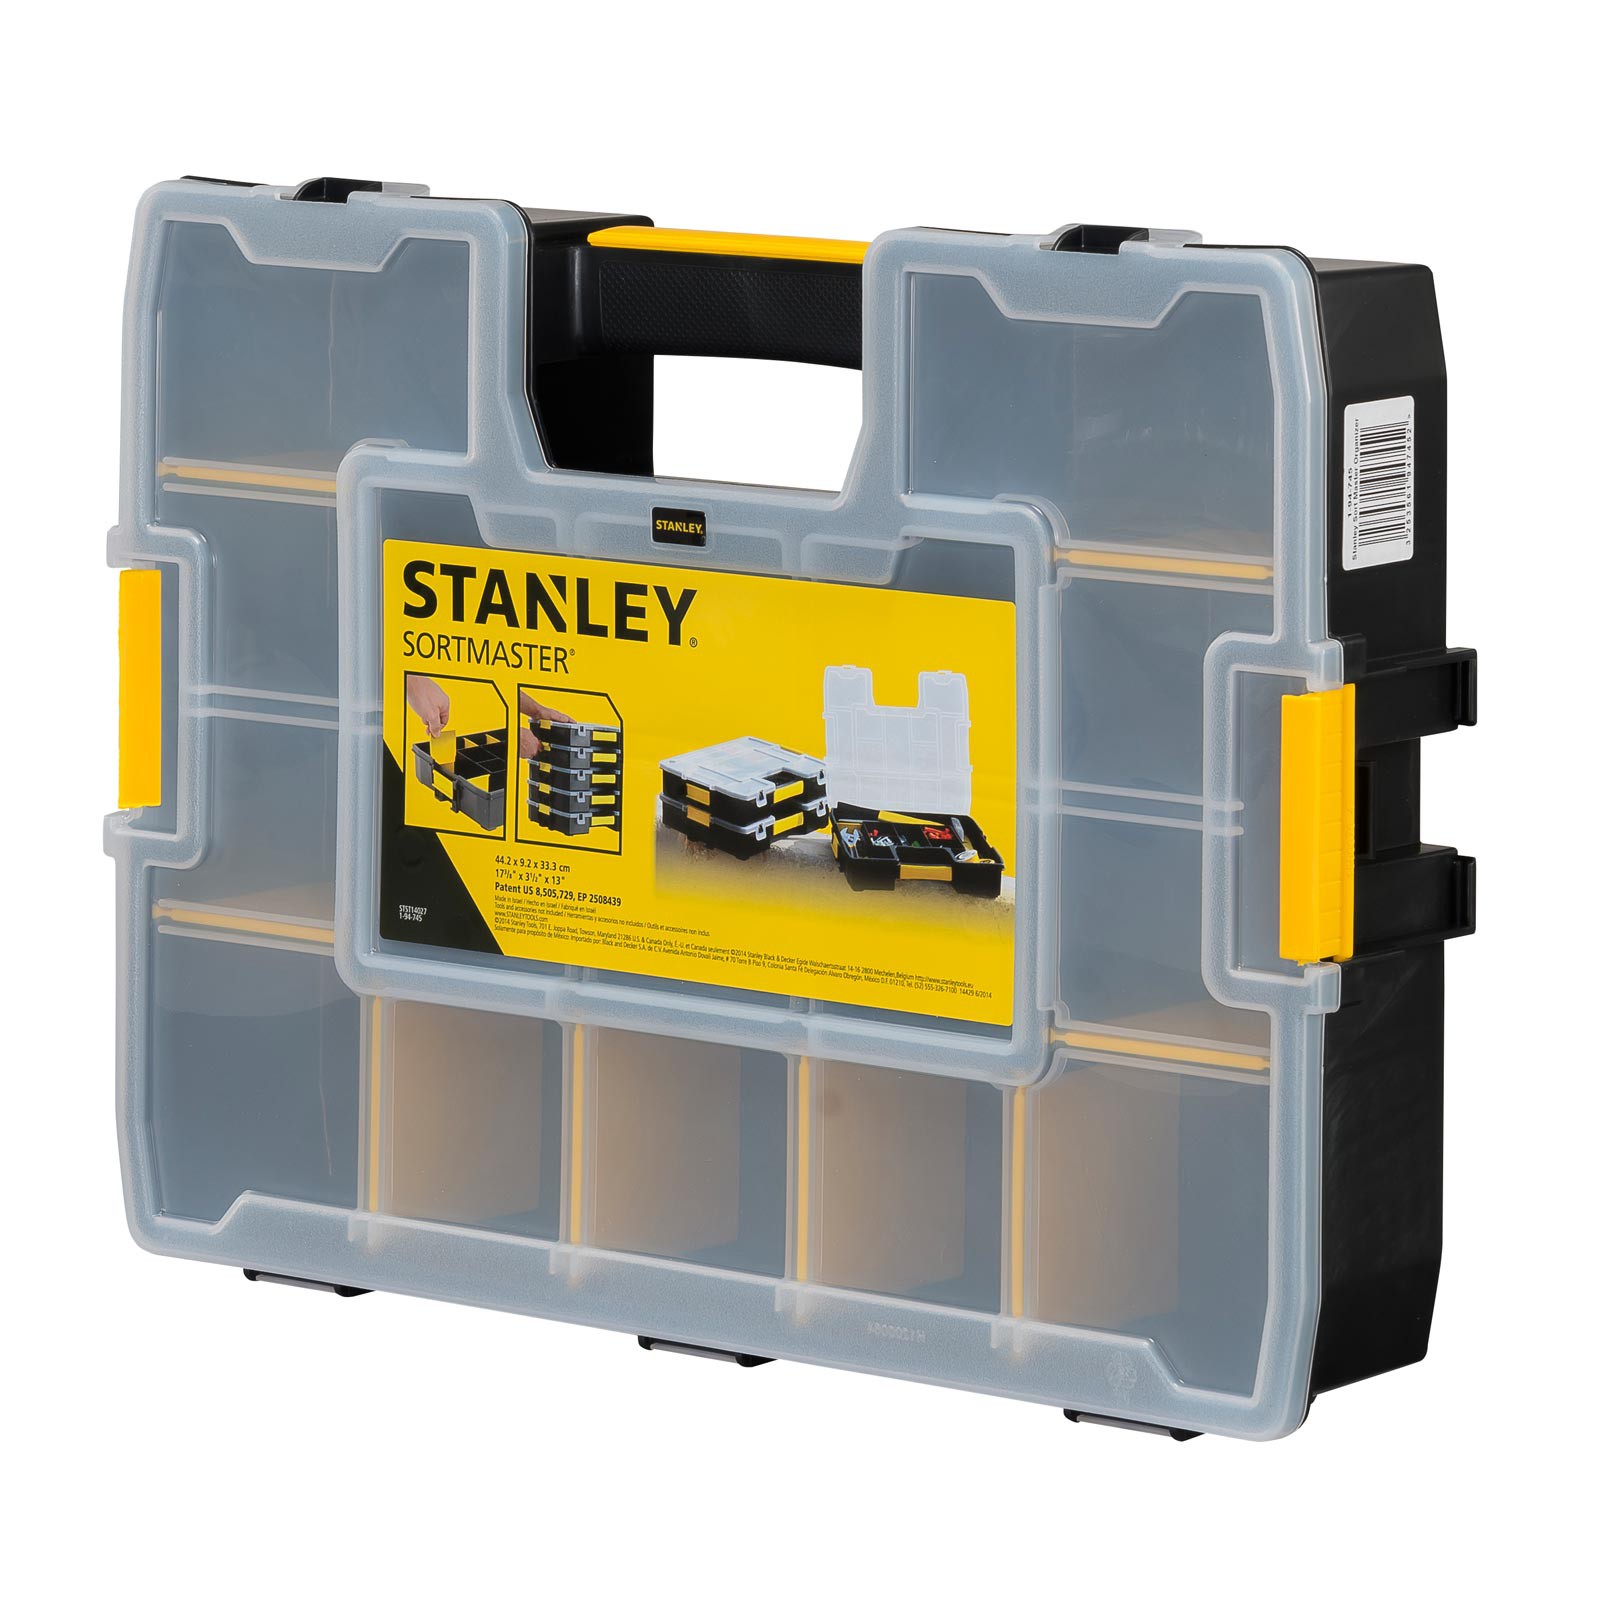 STANLEY Organizer 1-94-745 SortMaster - Sortimentskasten, Kleinteilemagazin von STANLEY®